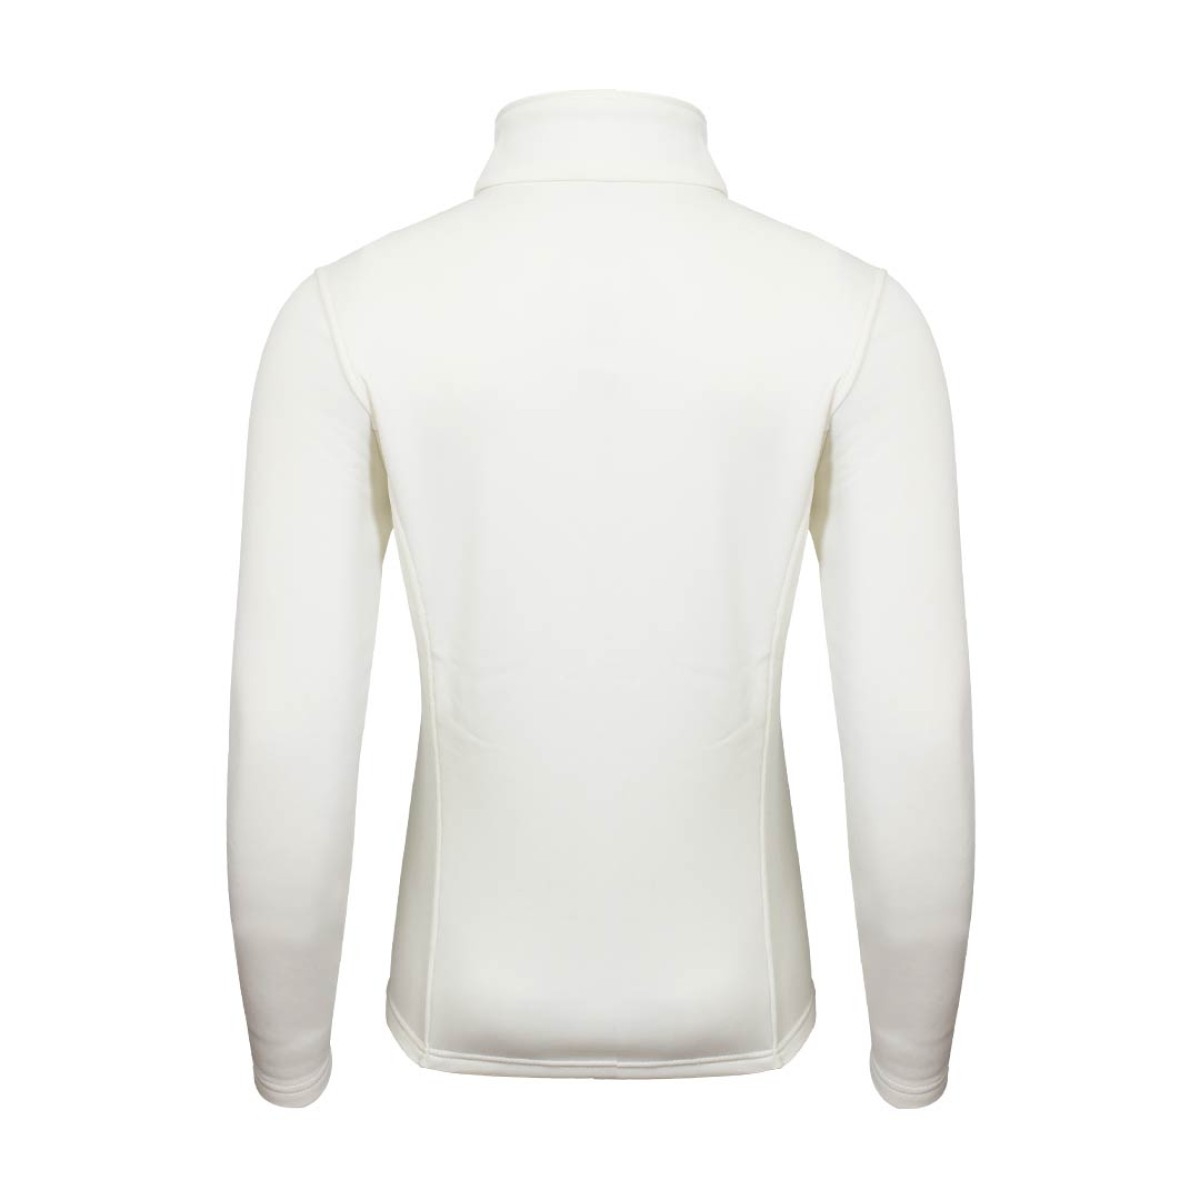 women-softshell-jacket-ksj16127